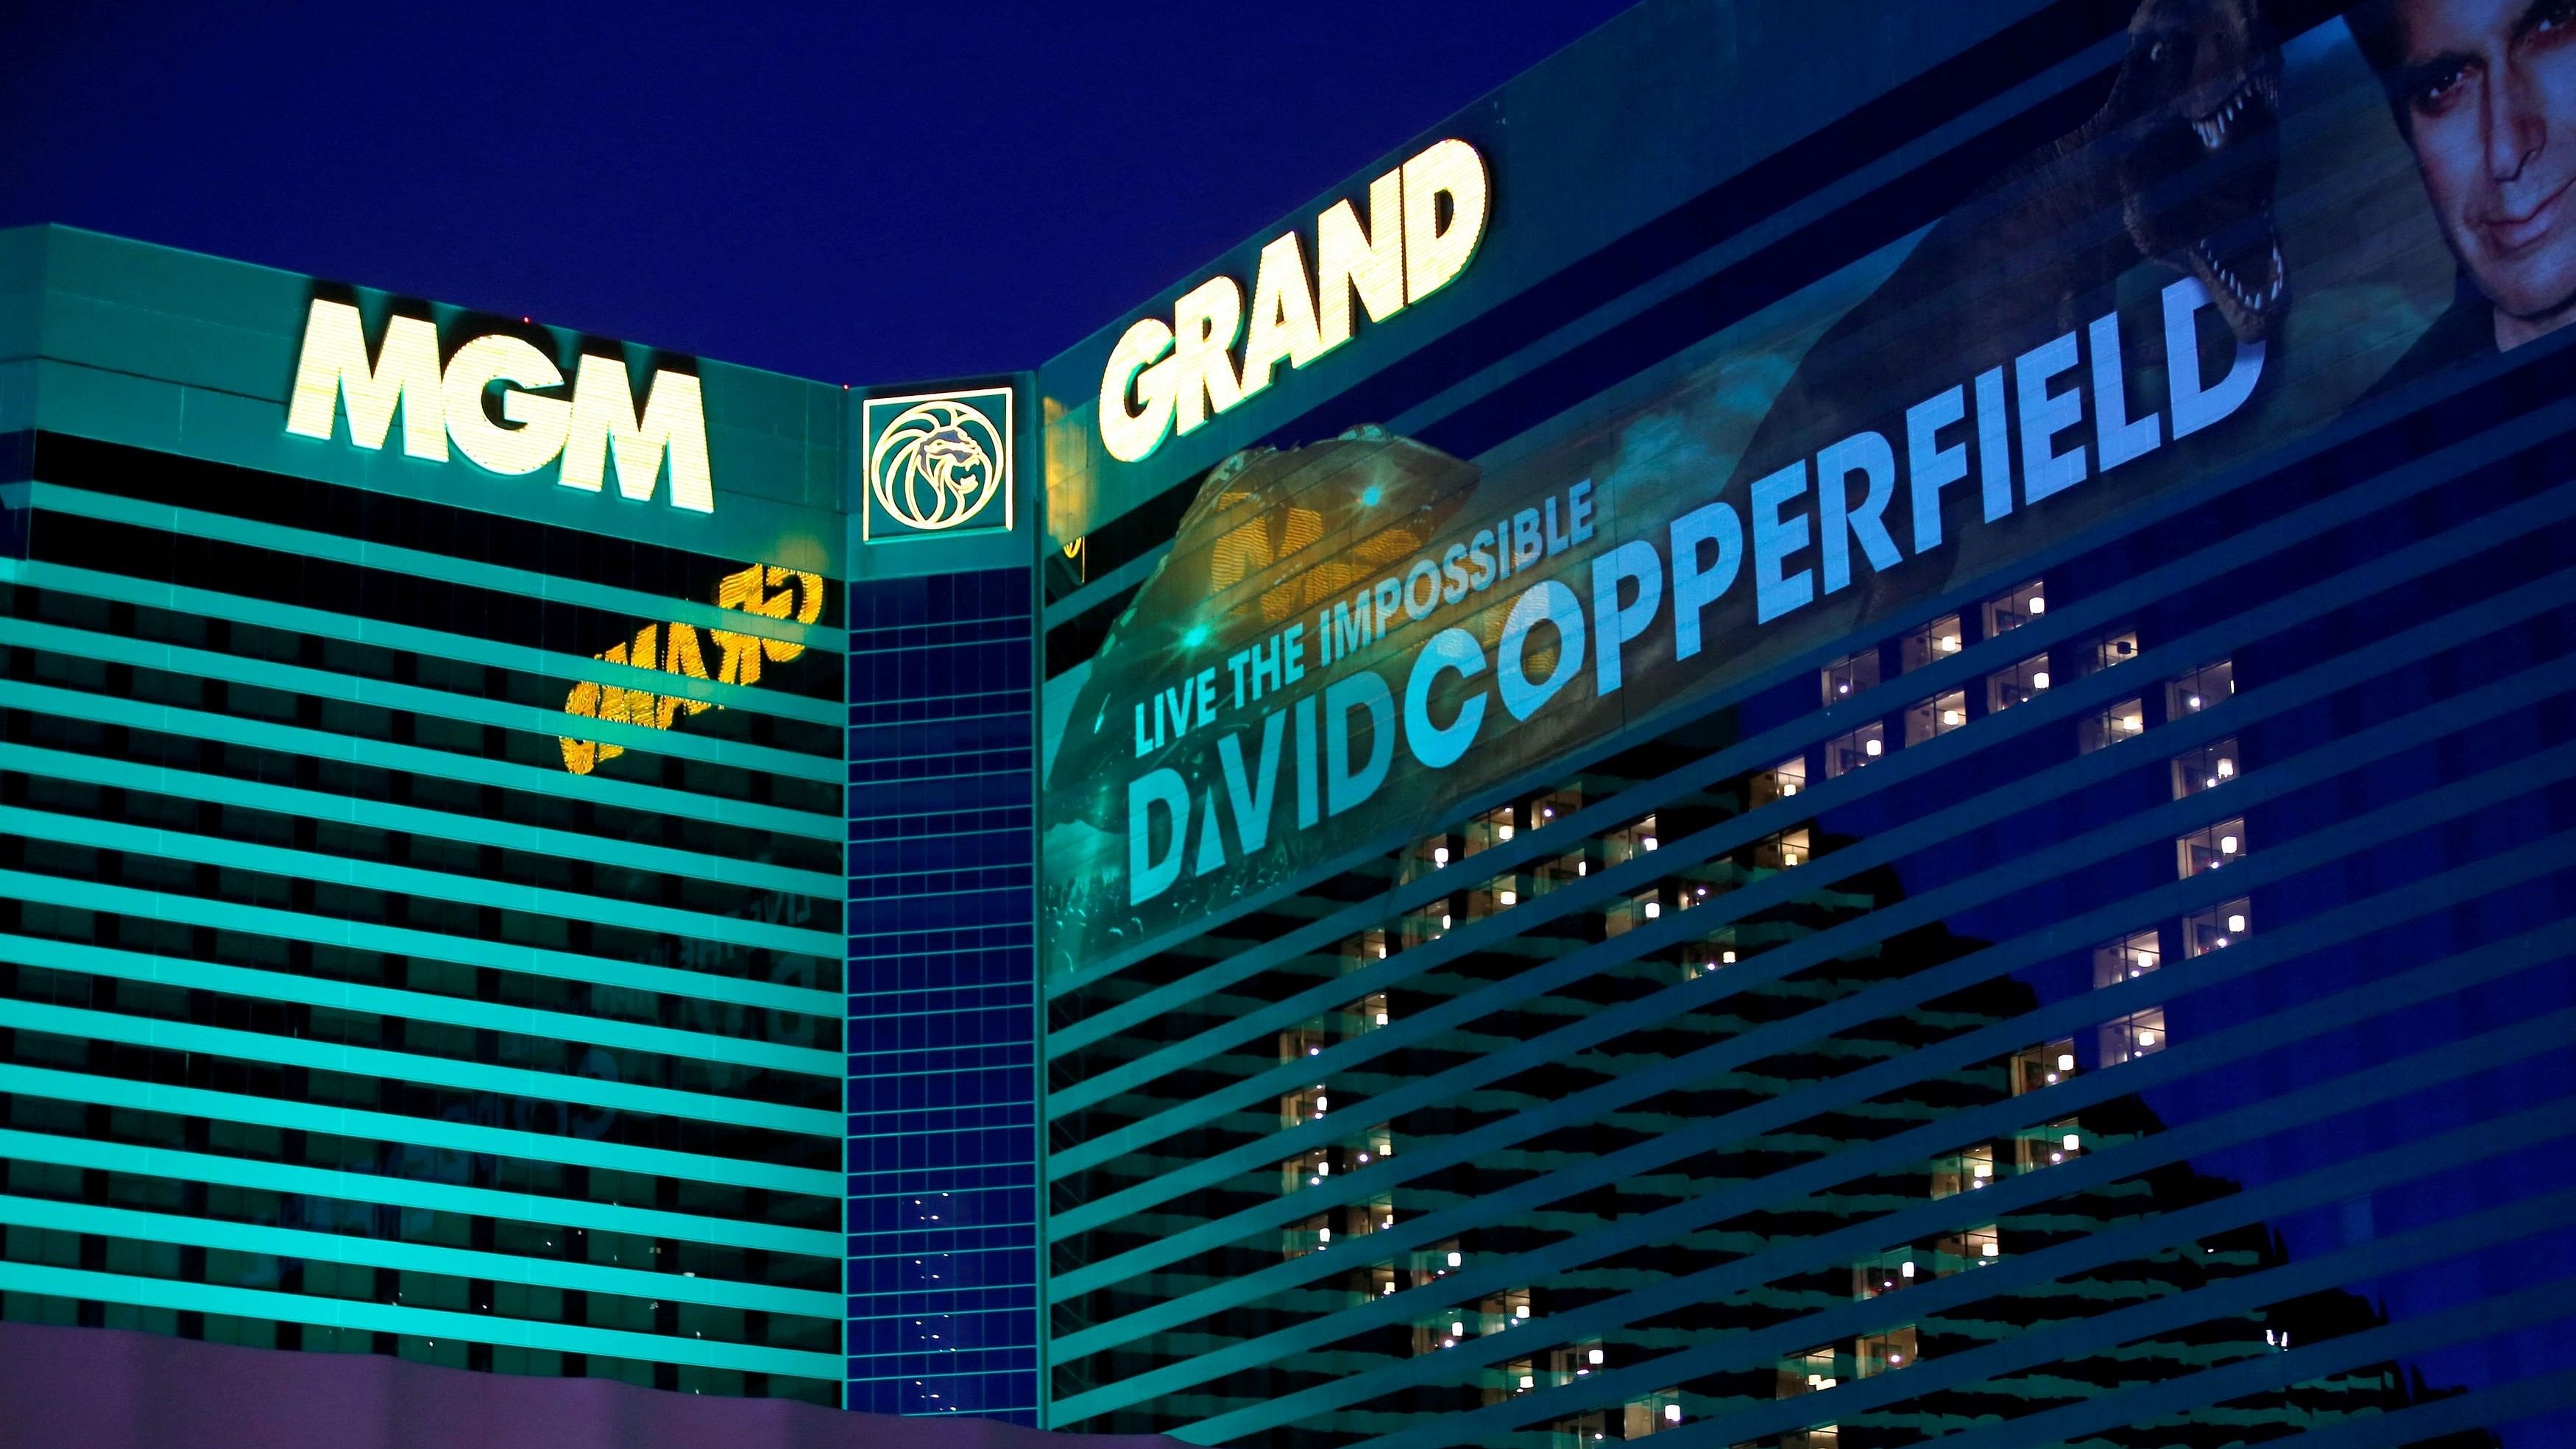 <div class="paragraphs"><p> MGM Grand hotel-casino.</p></div>